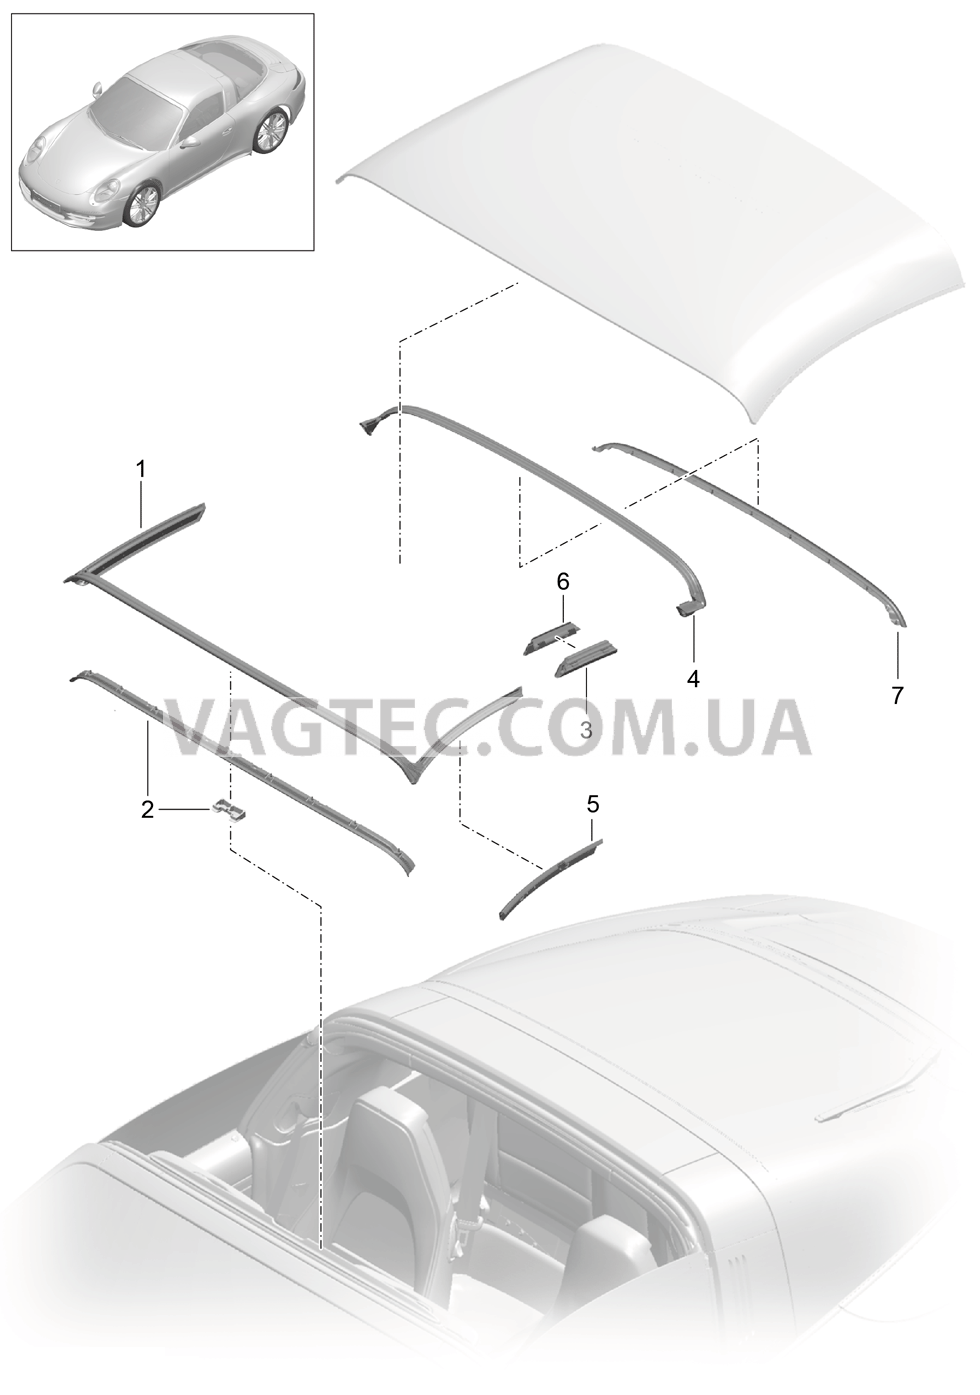 811-032 Складной верх, Прокладка
						
						TARGA для PORSCHE 911.Carrera 2012-2016